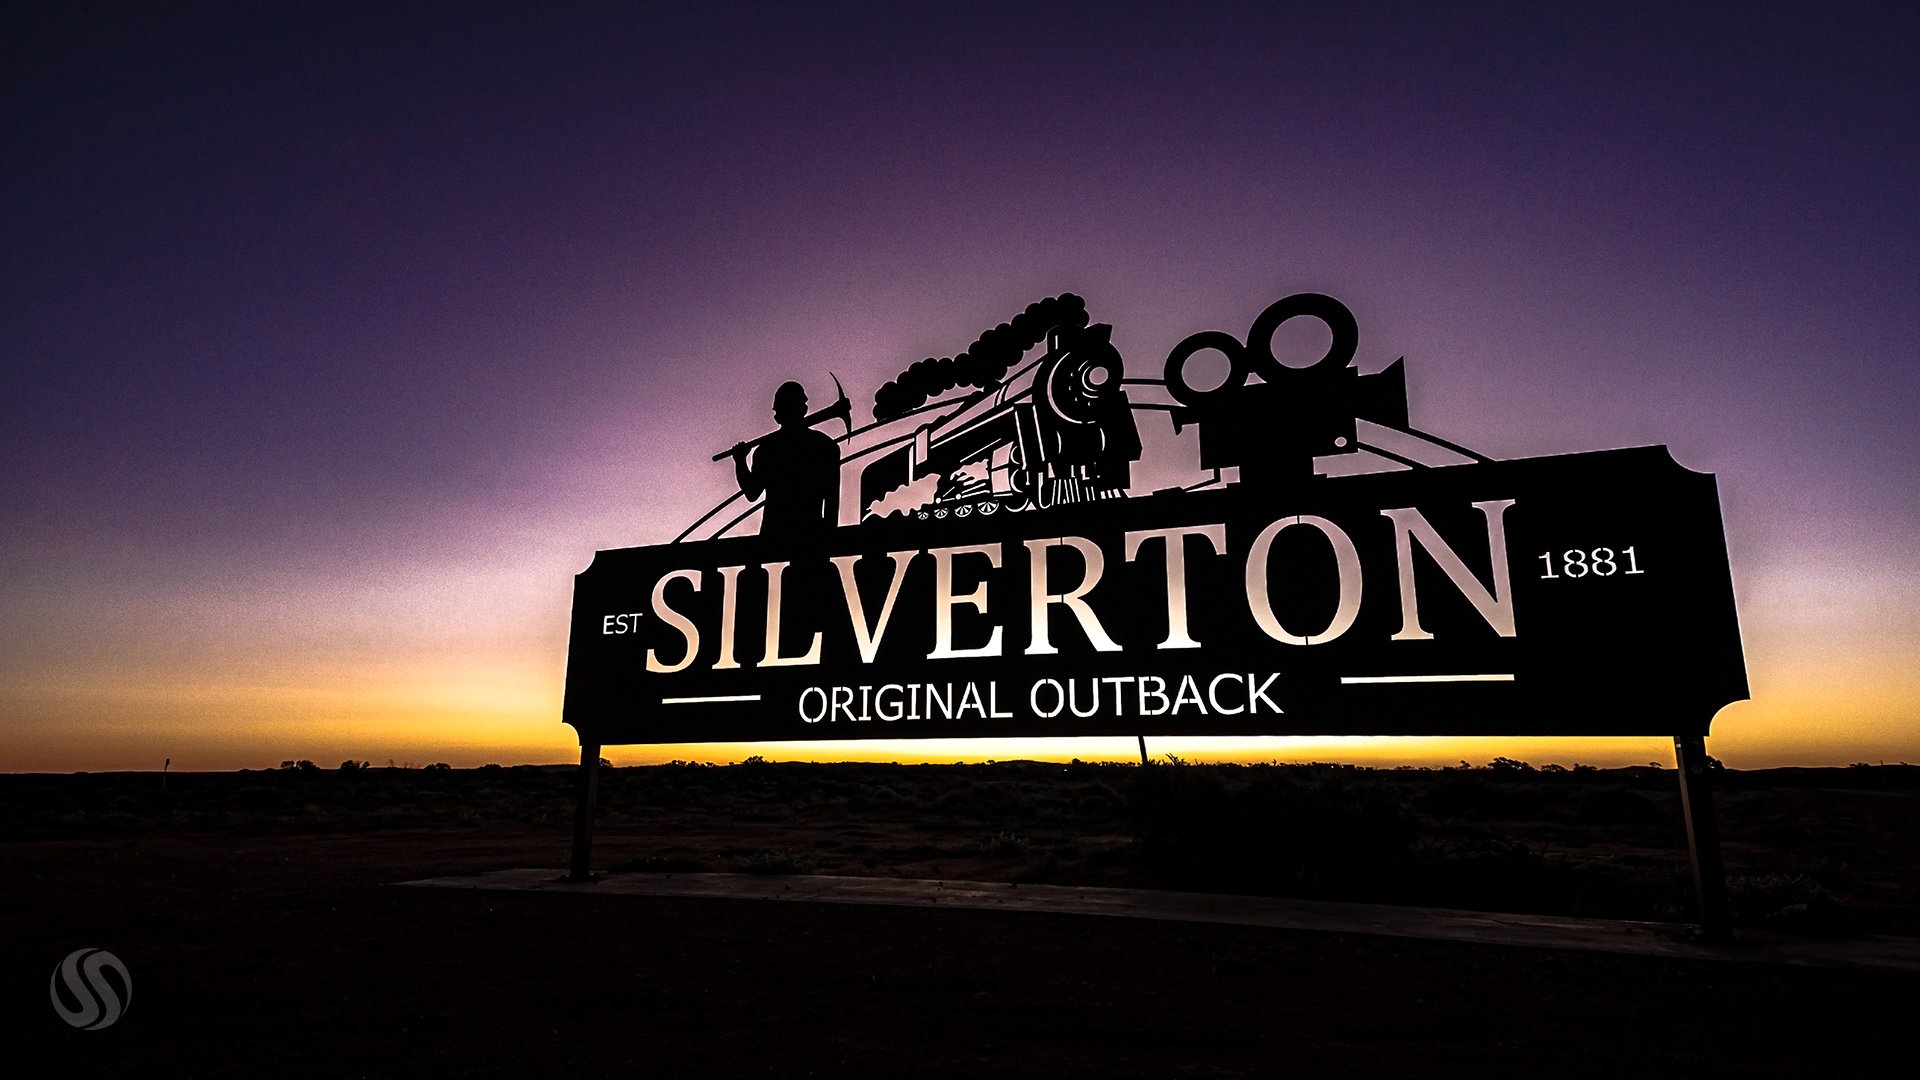 Silverton, Outback NSW, Australia